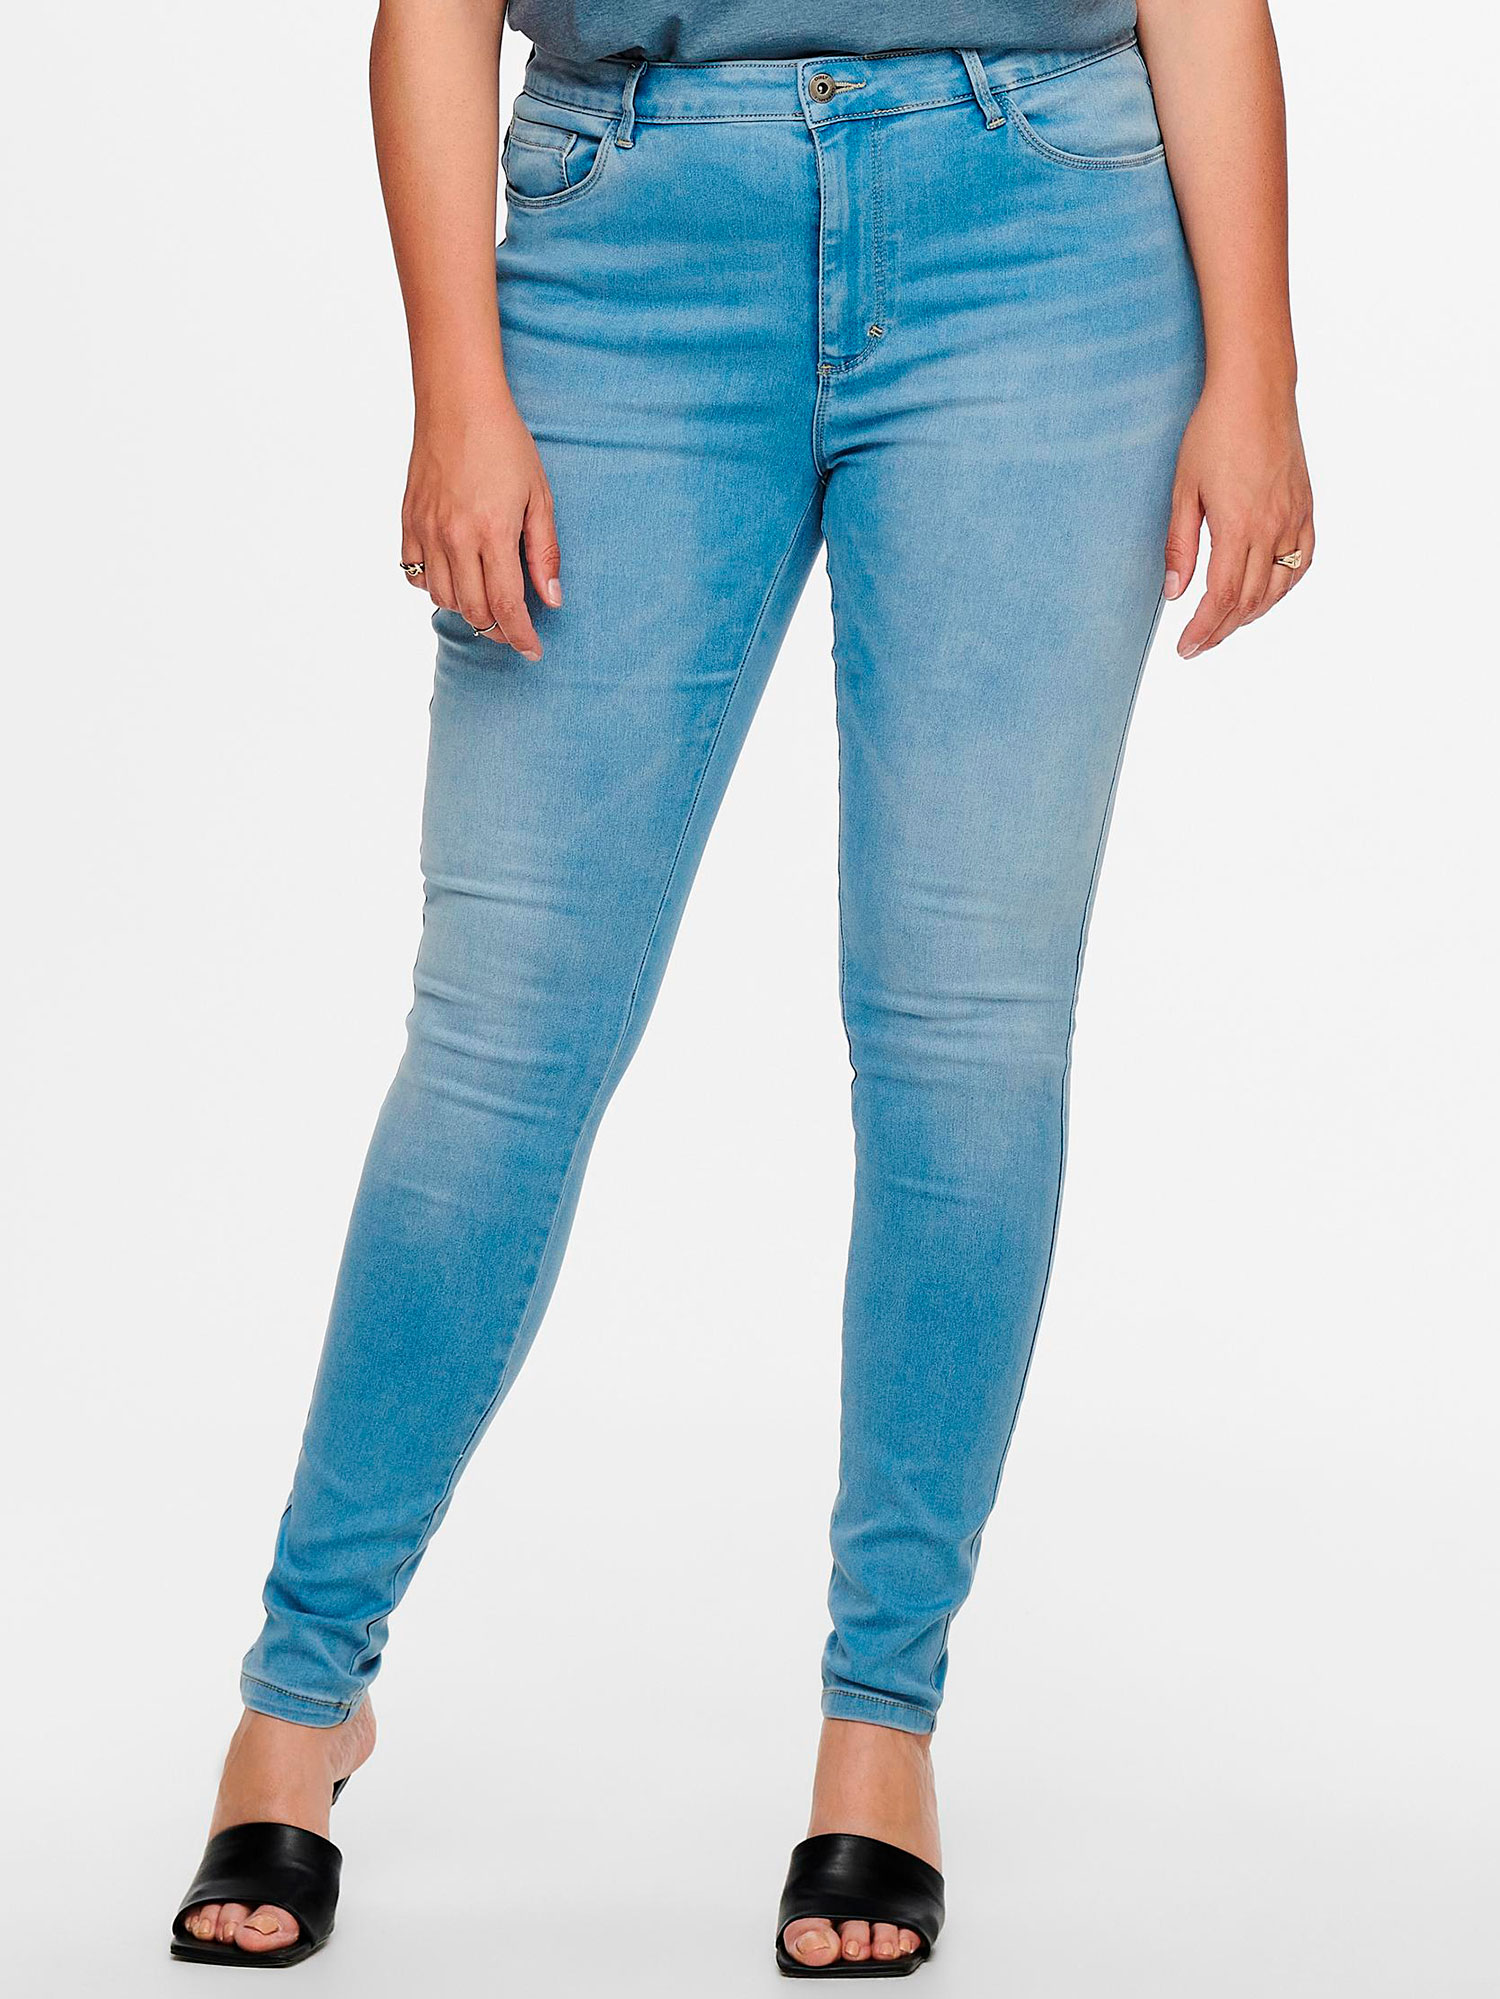 Carmakoma AUGUSTA - jeans i strækbar bomulds denim, længde 34